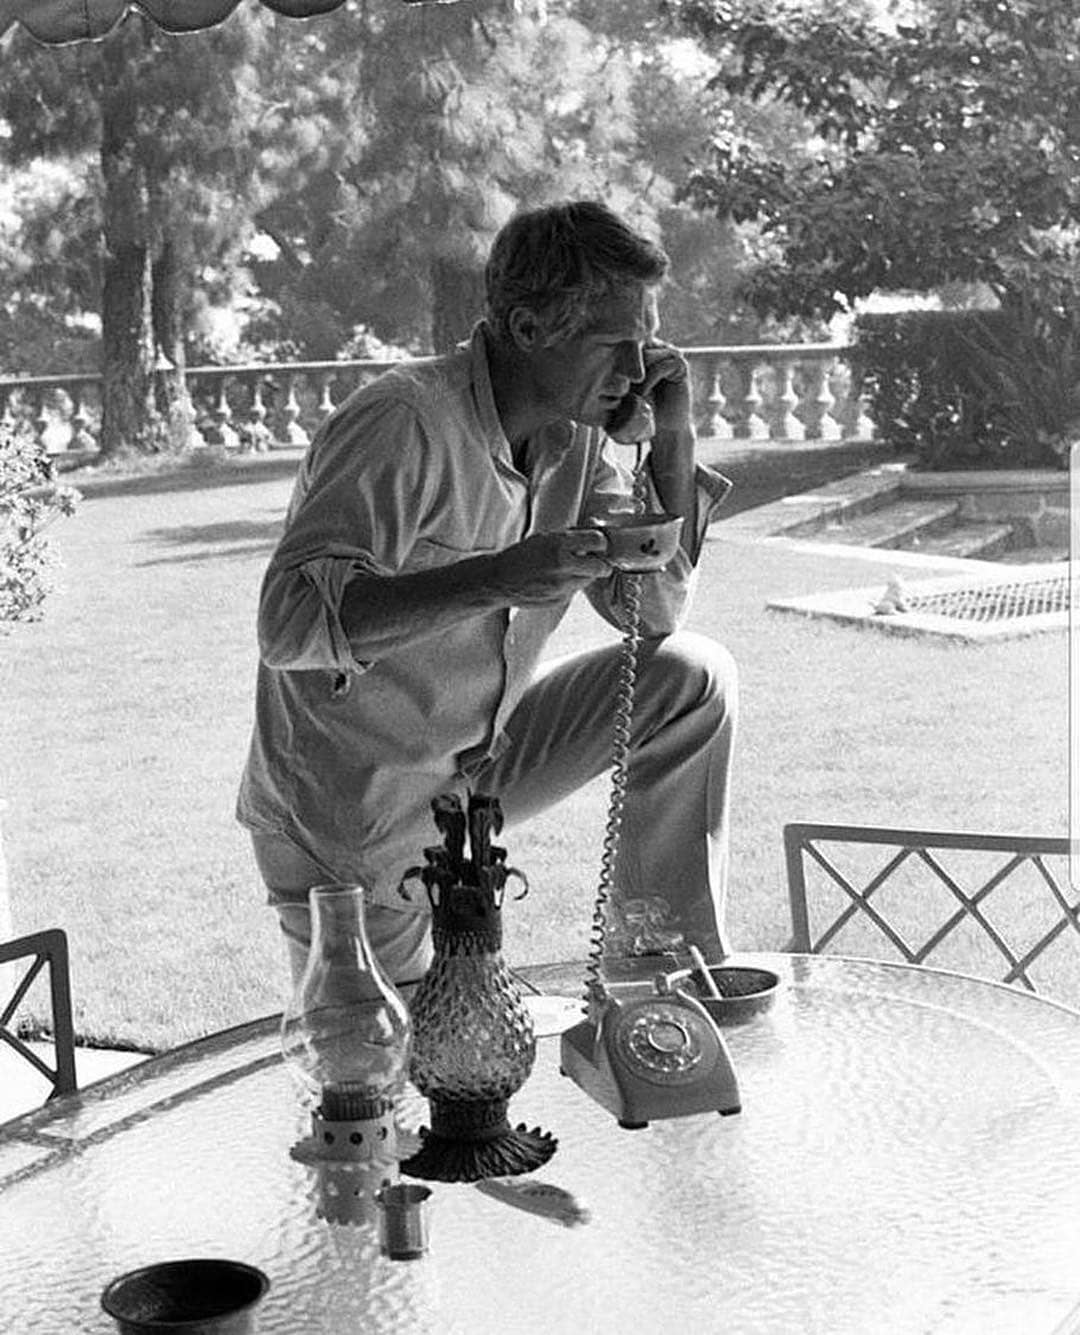 Steve McQueen on the telephone, California, 1960s